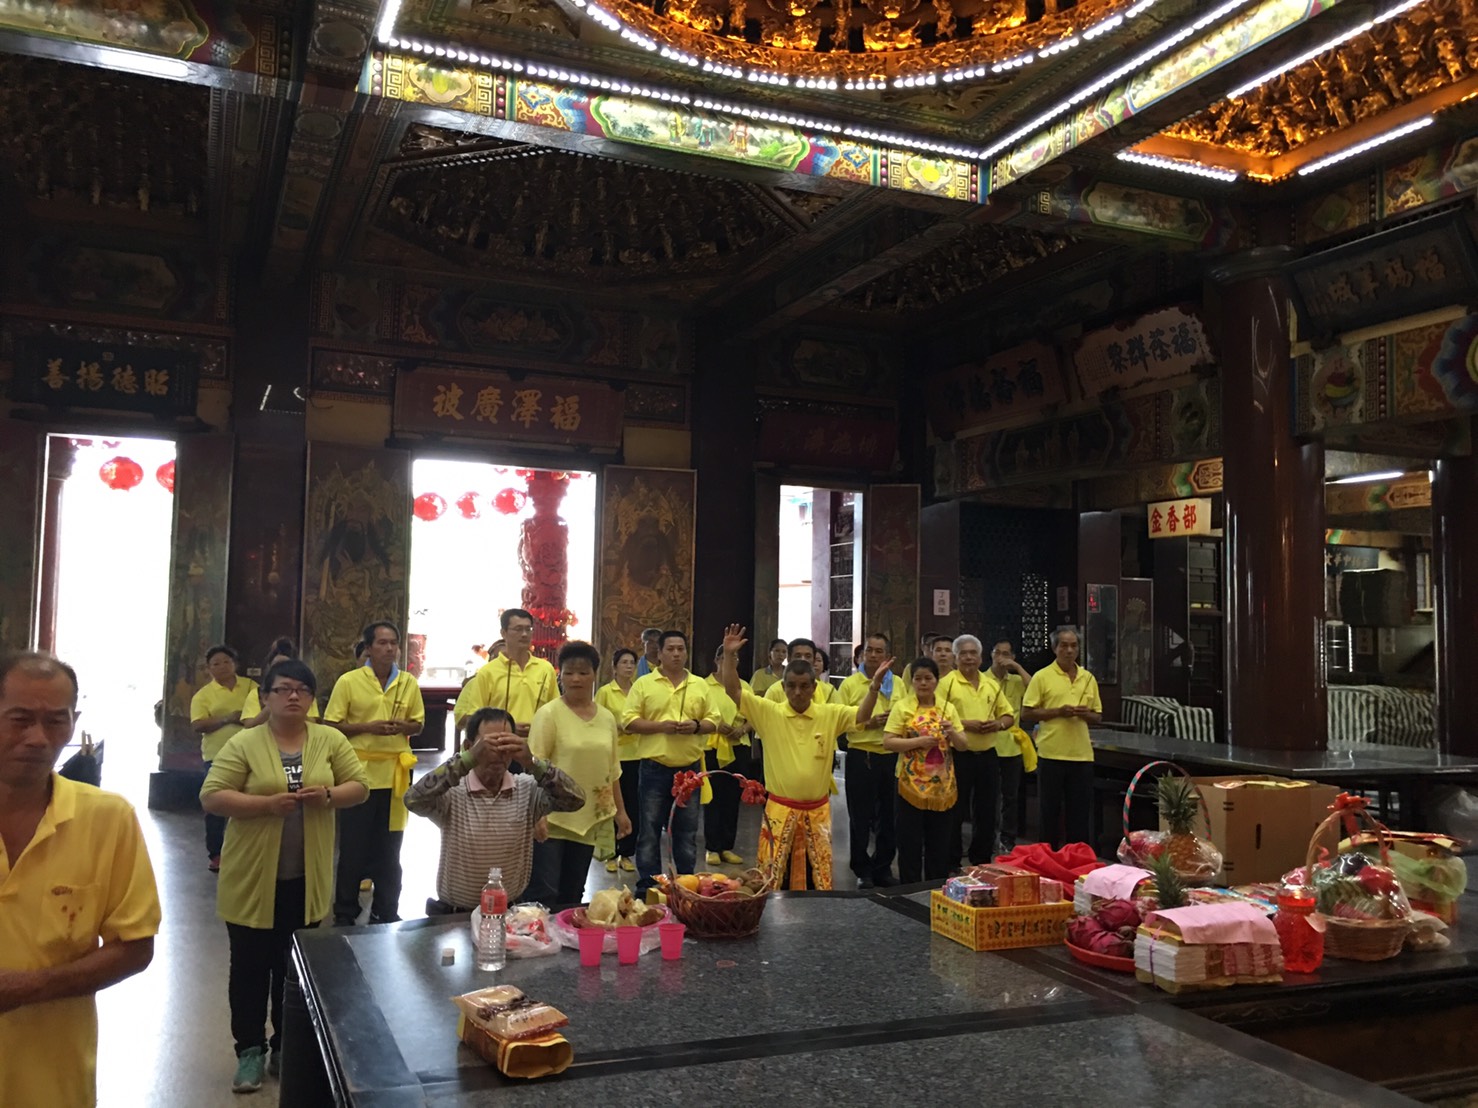 金碧輝煌的正殿， 連綿兩層樓的挑高氣勢， 台灣廟宇的尊崇！